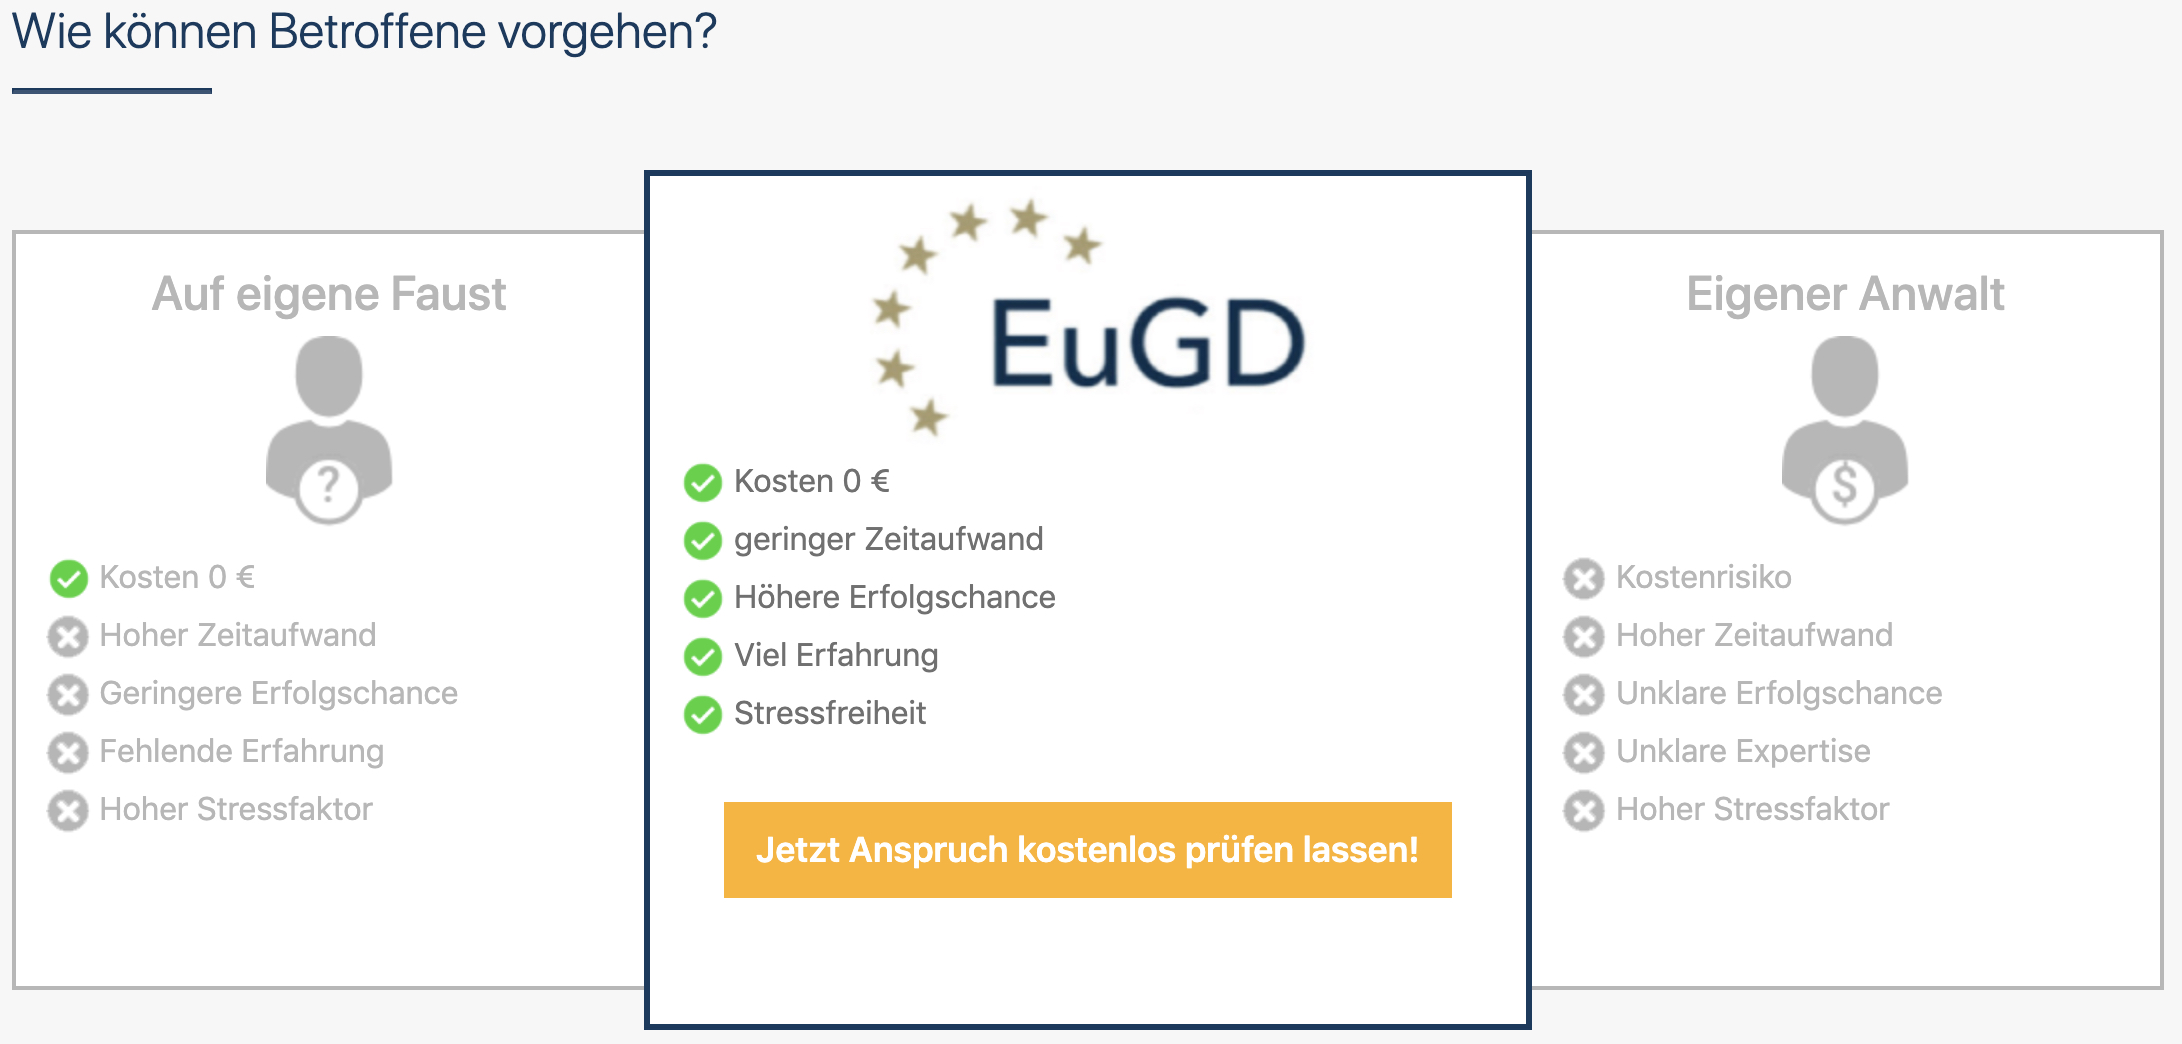 eugd.org